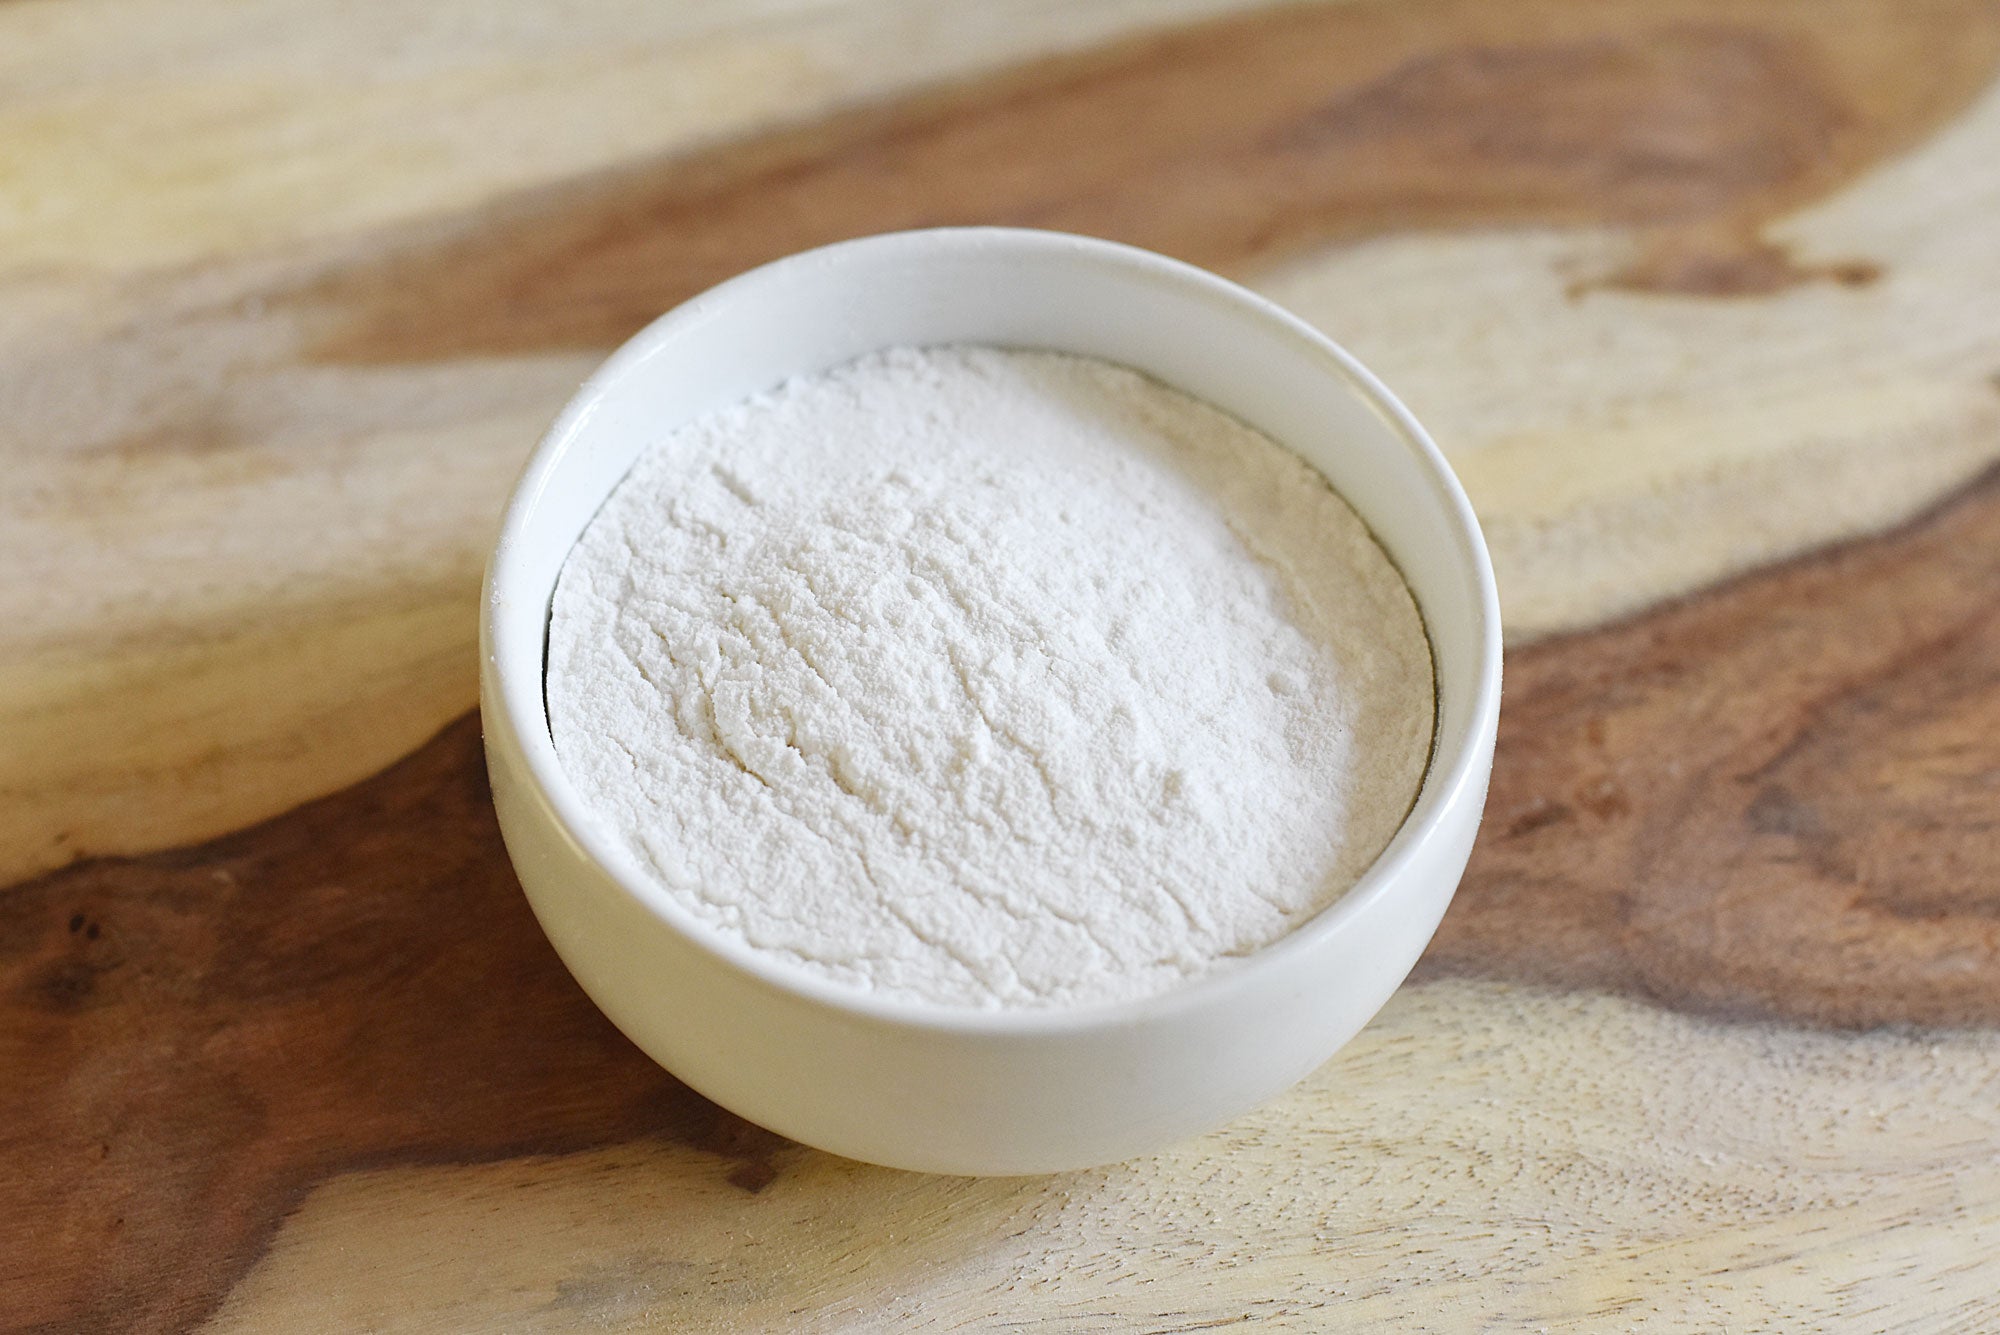 Sweet Rice Flour: Gluten Free & Non-GMO